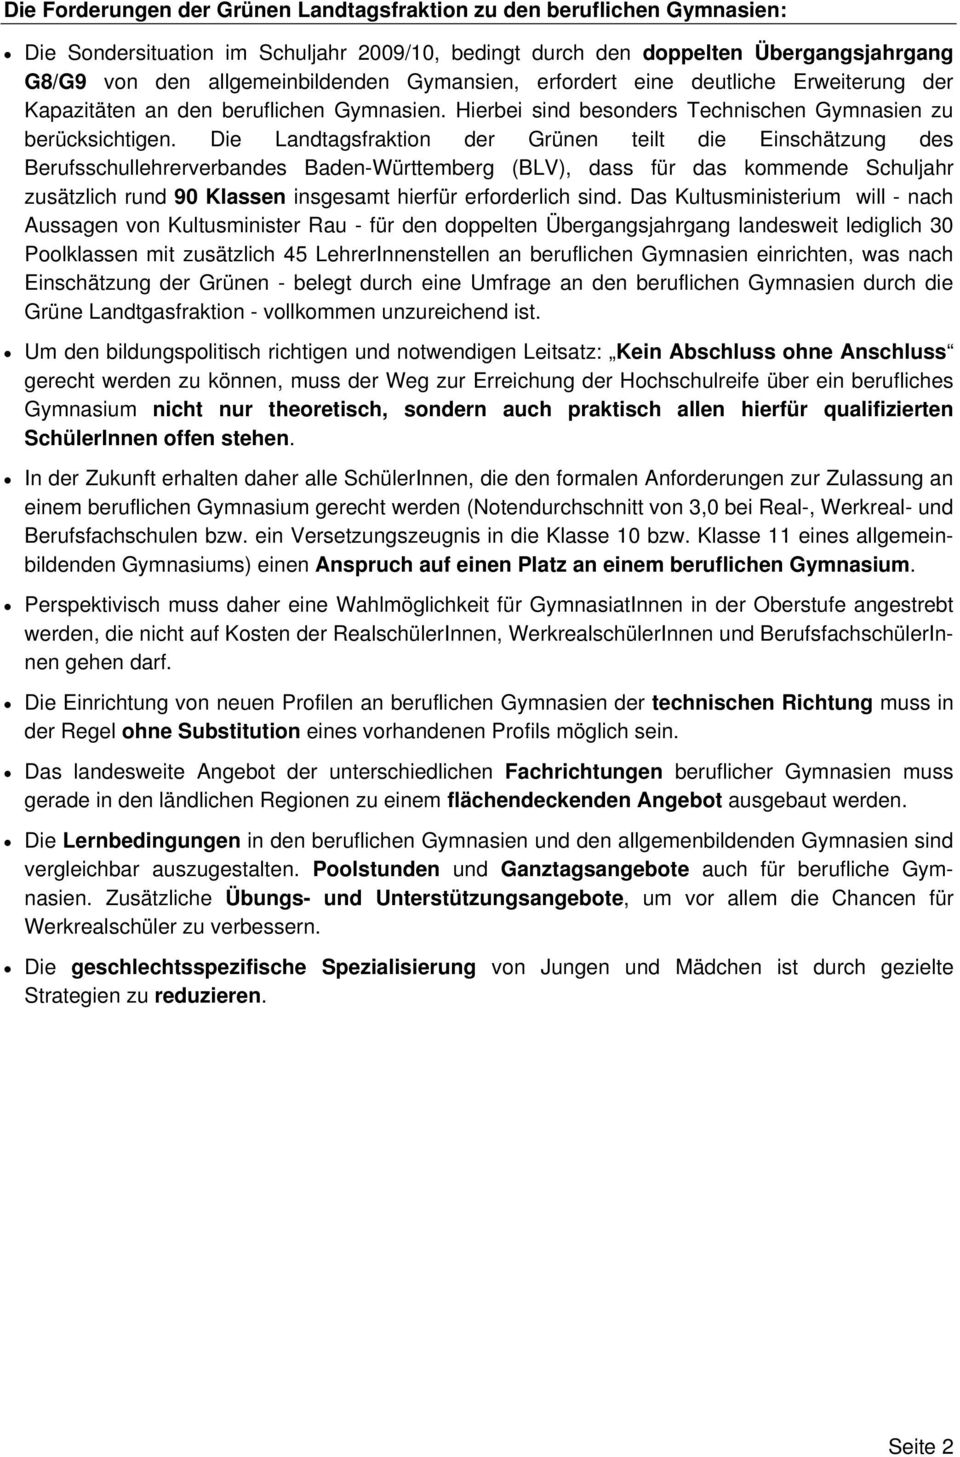 Die Landtagsfraktion der Grünen teilt die Einschätzung des Berufsschullehrerverbandes Baden-Württemberg (BLV), dass für das kommende Schuljahr zusätzlich rund 90 Klassen insgesamt hierfür